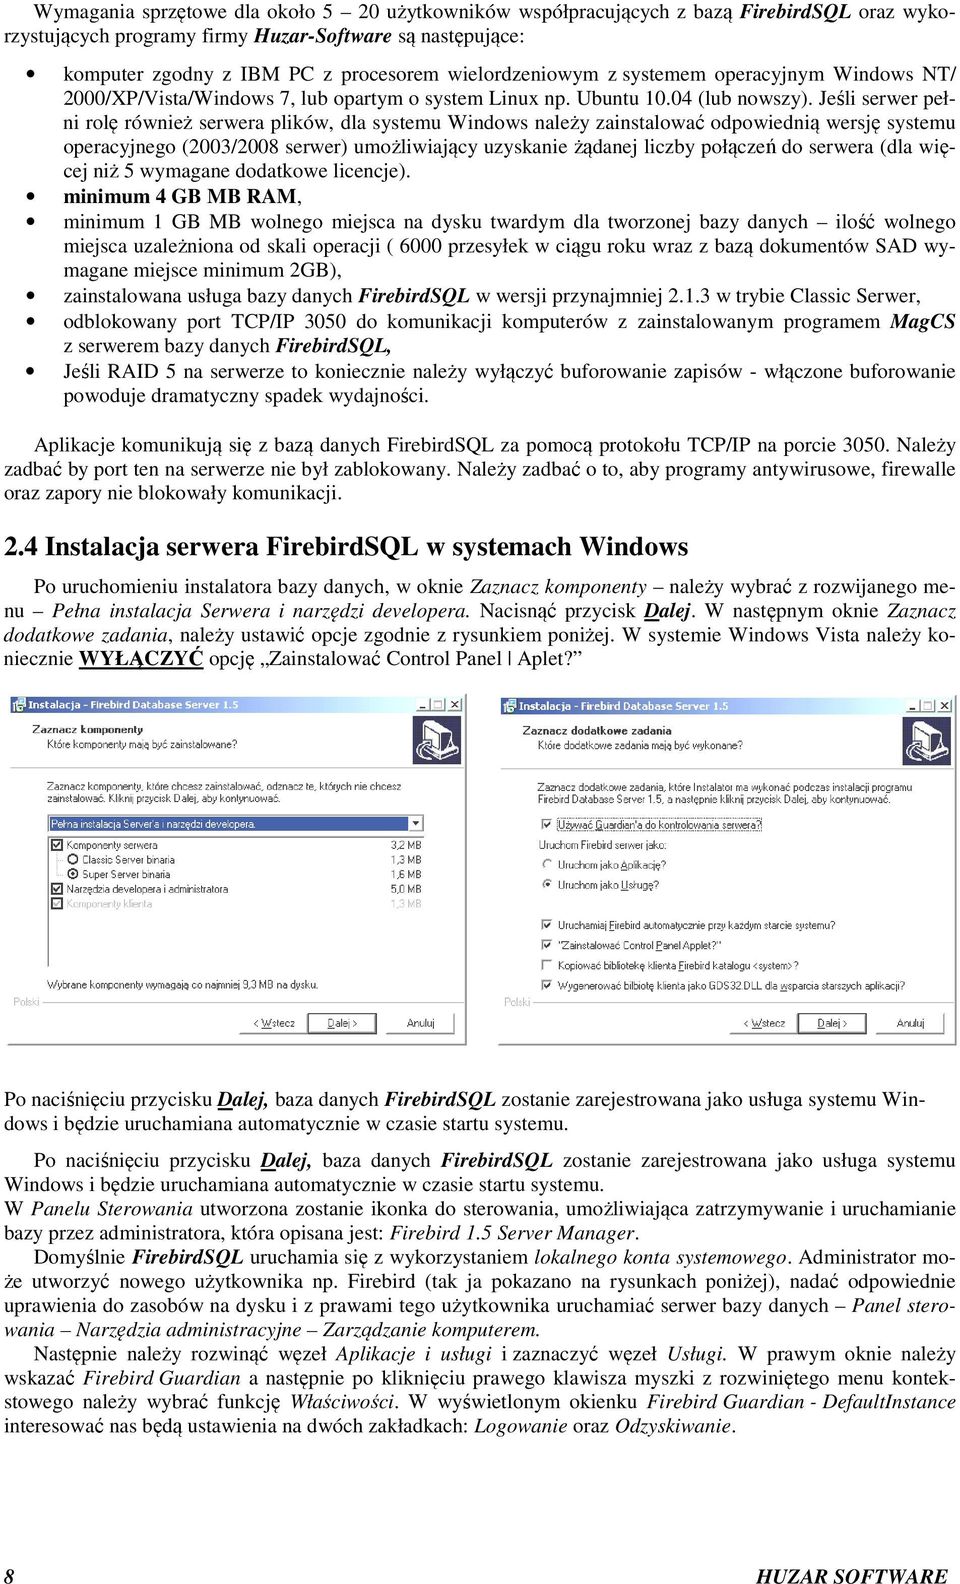 Jeśli serwer pełni rolę również serwera plików, dla systemu Windows należy zainstalować odpowiednią wersję systemu operacyjnego (2003/2008 serwer) umożliwiający uzyskanie żądanej liczby połączeń do